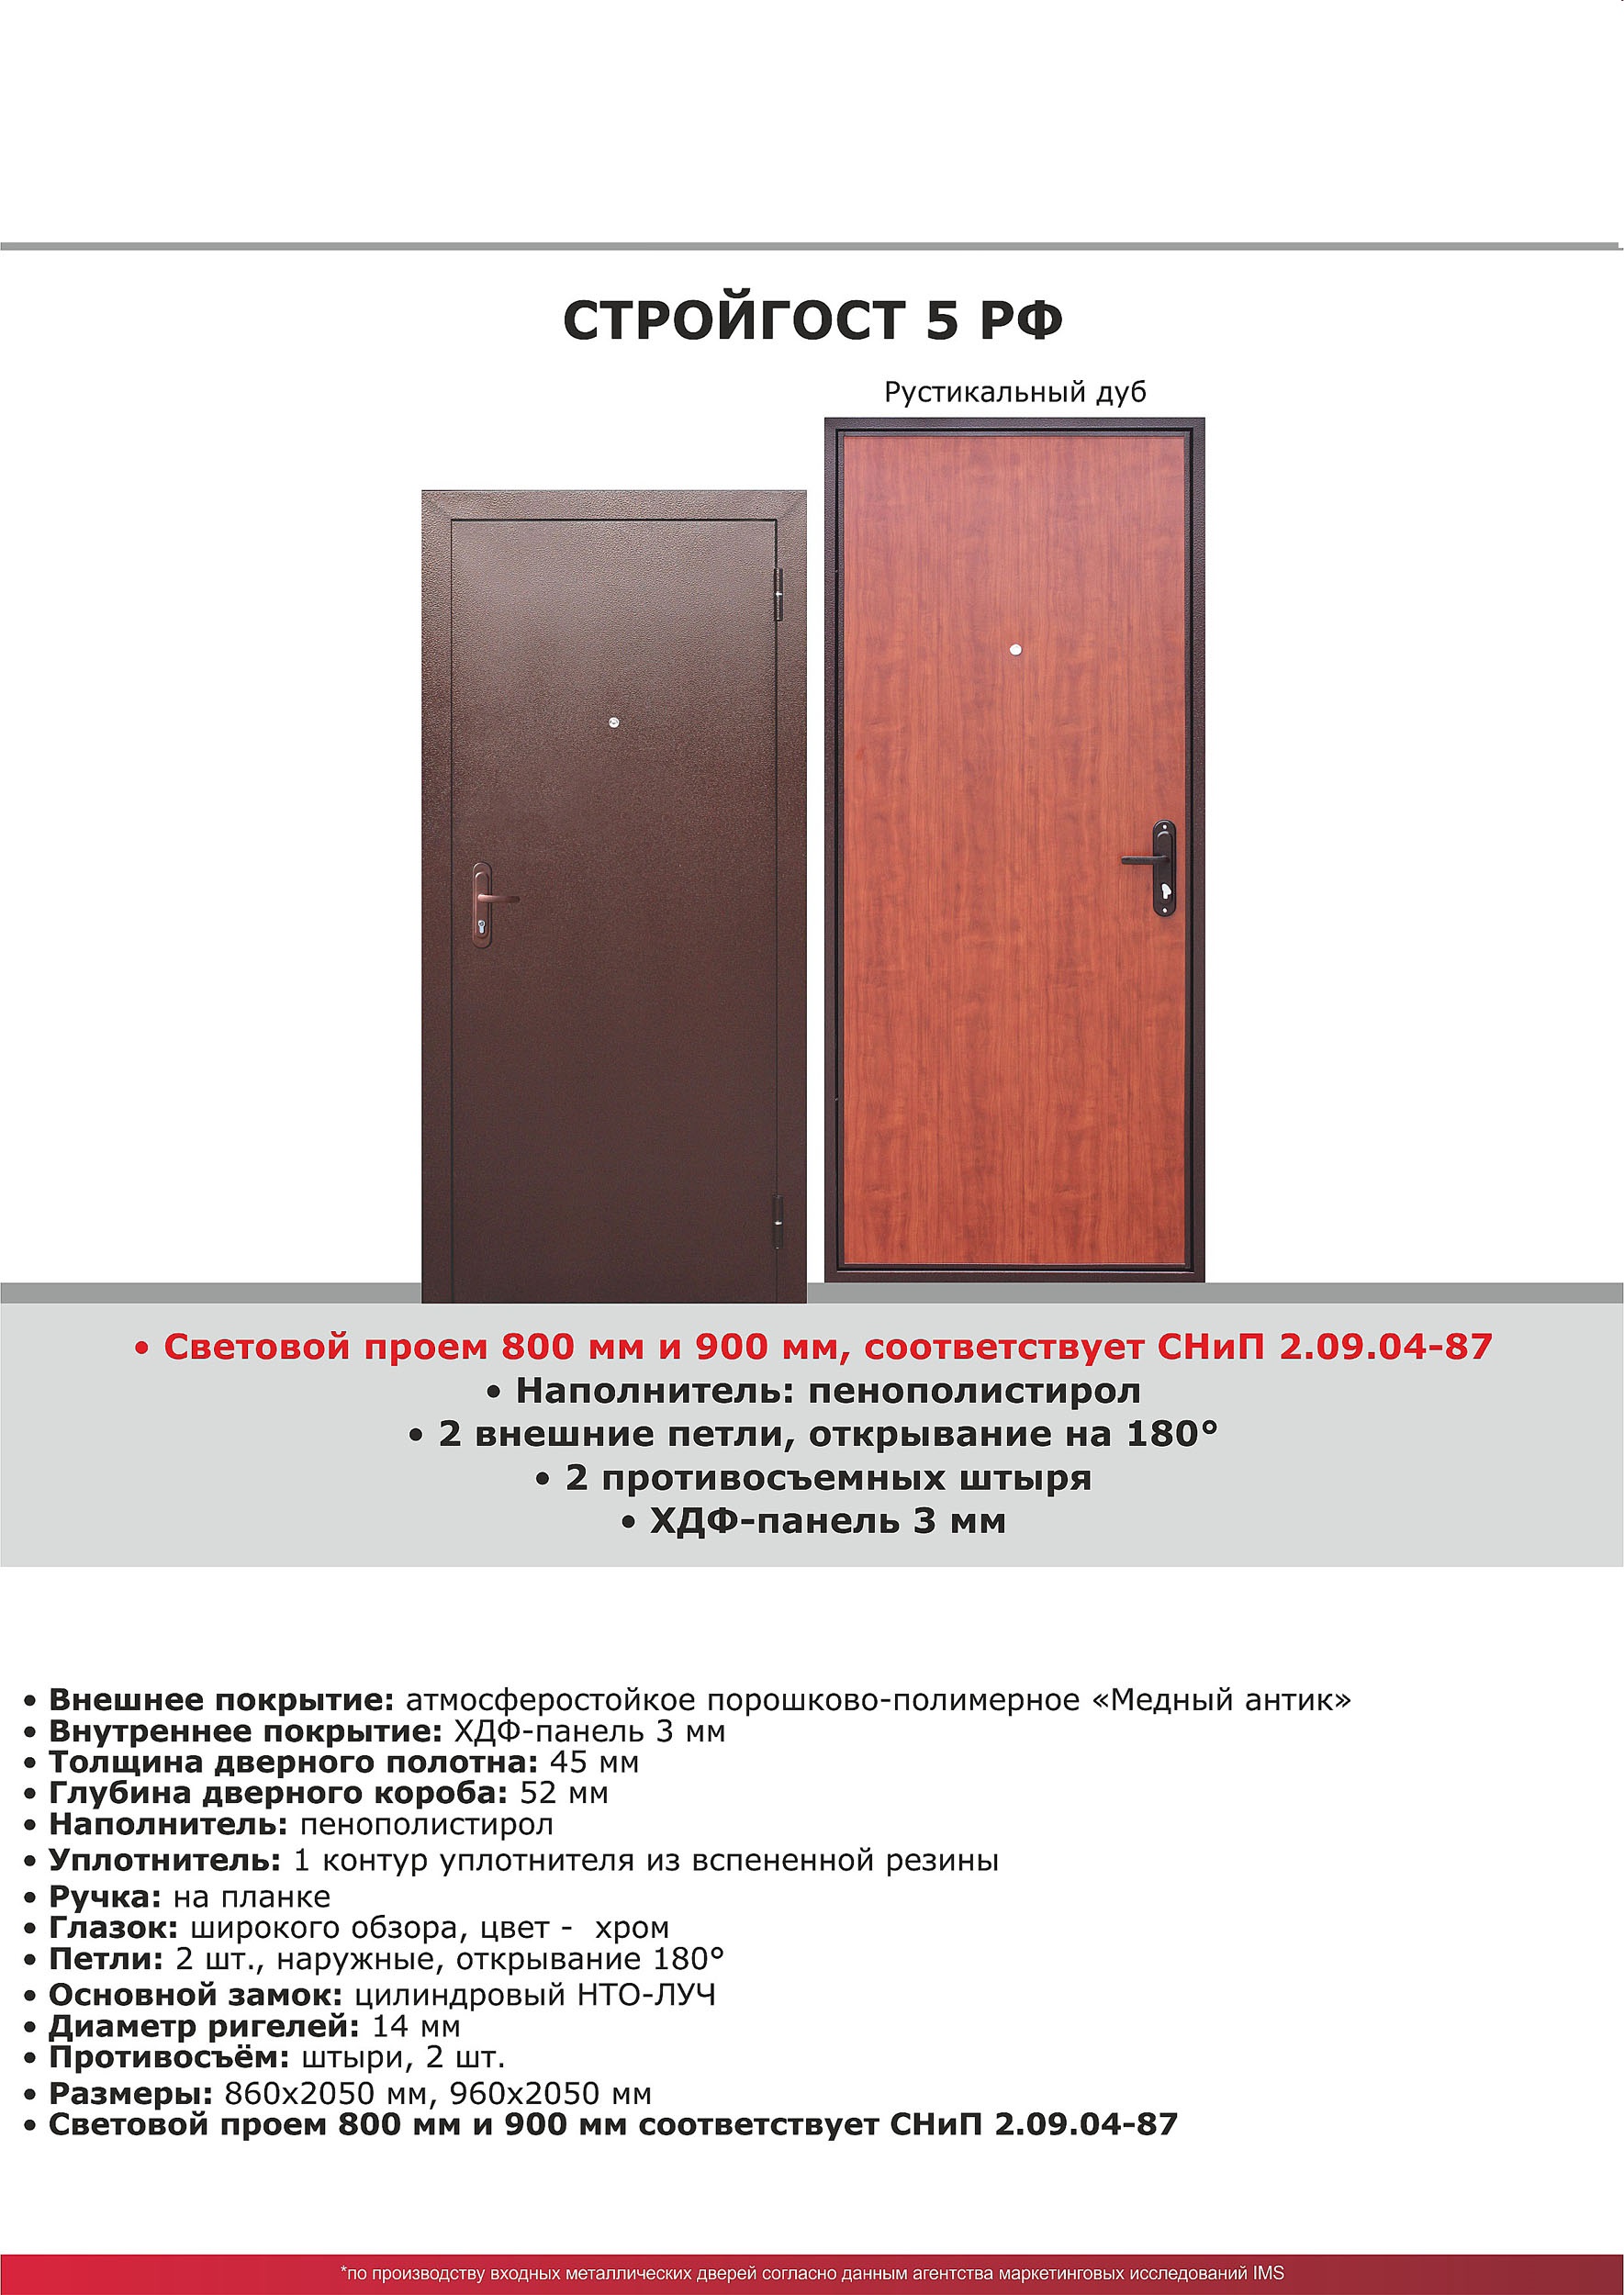 Входная дверь Стройгост 5 РФ Рустикальный дуб 2050*860  лев УТ000017816